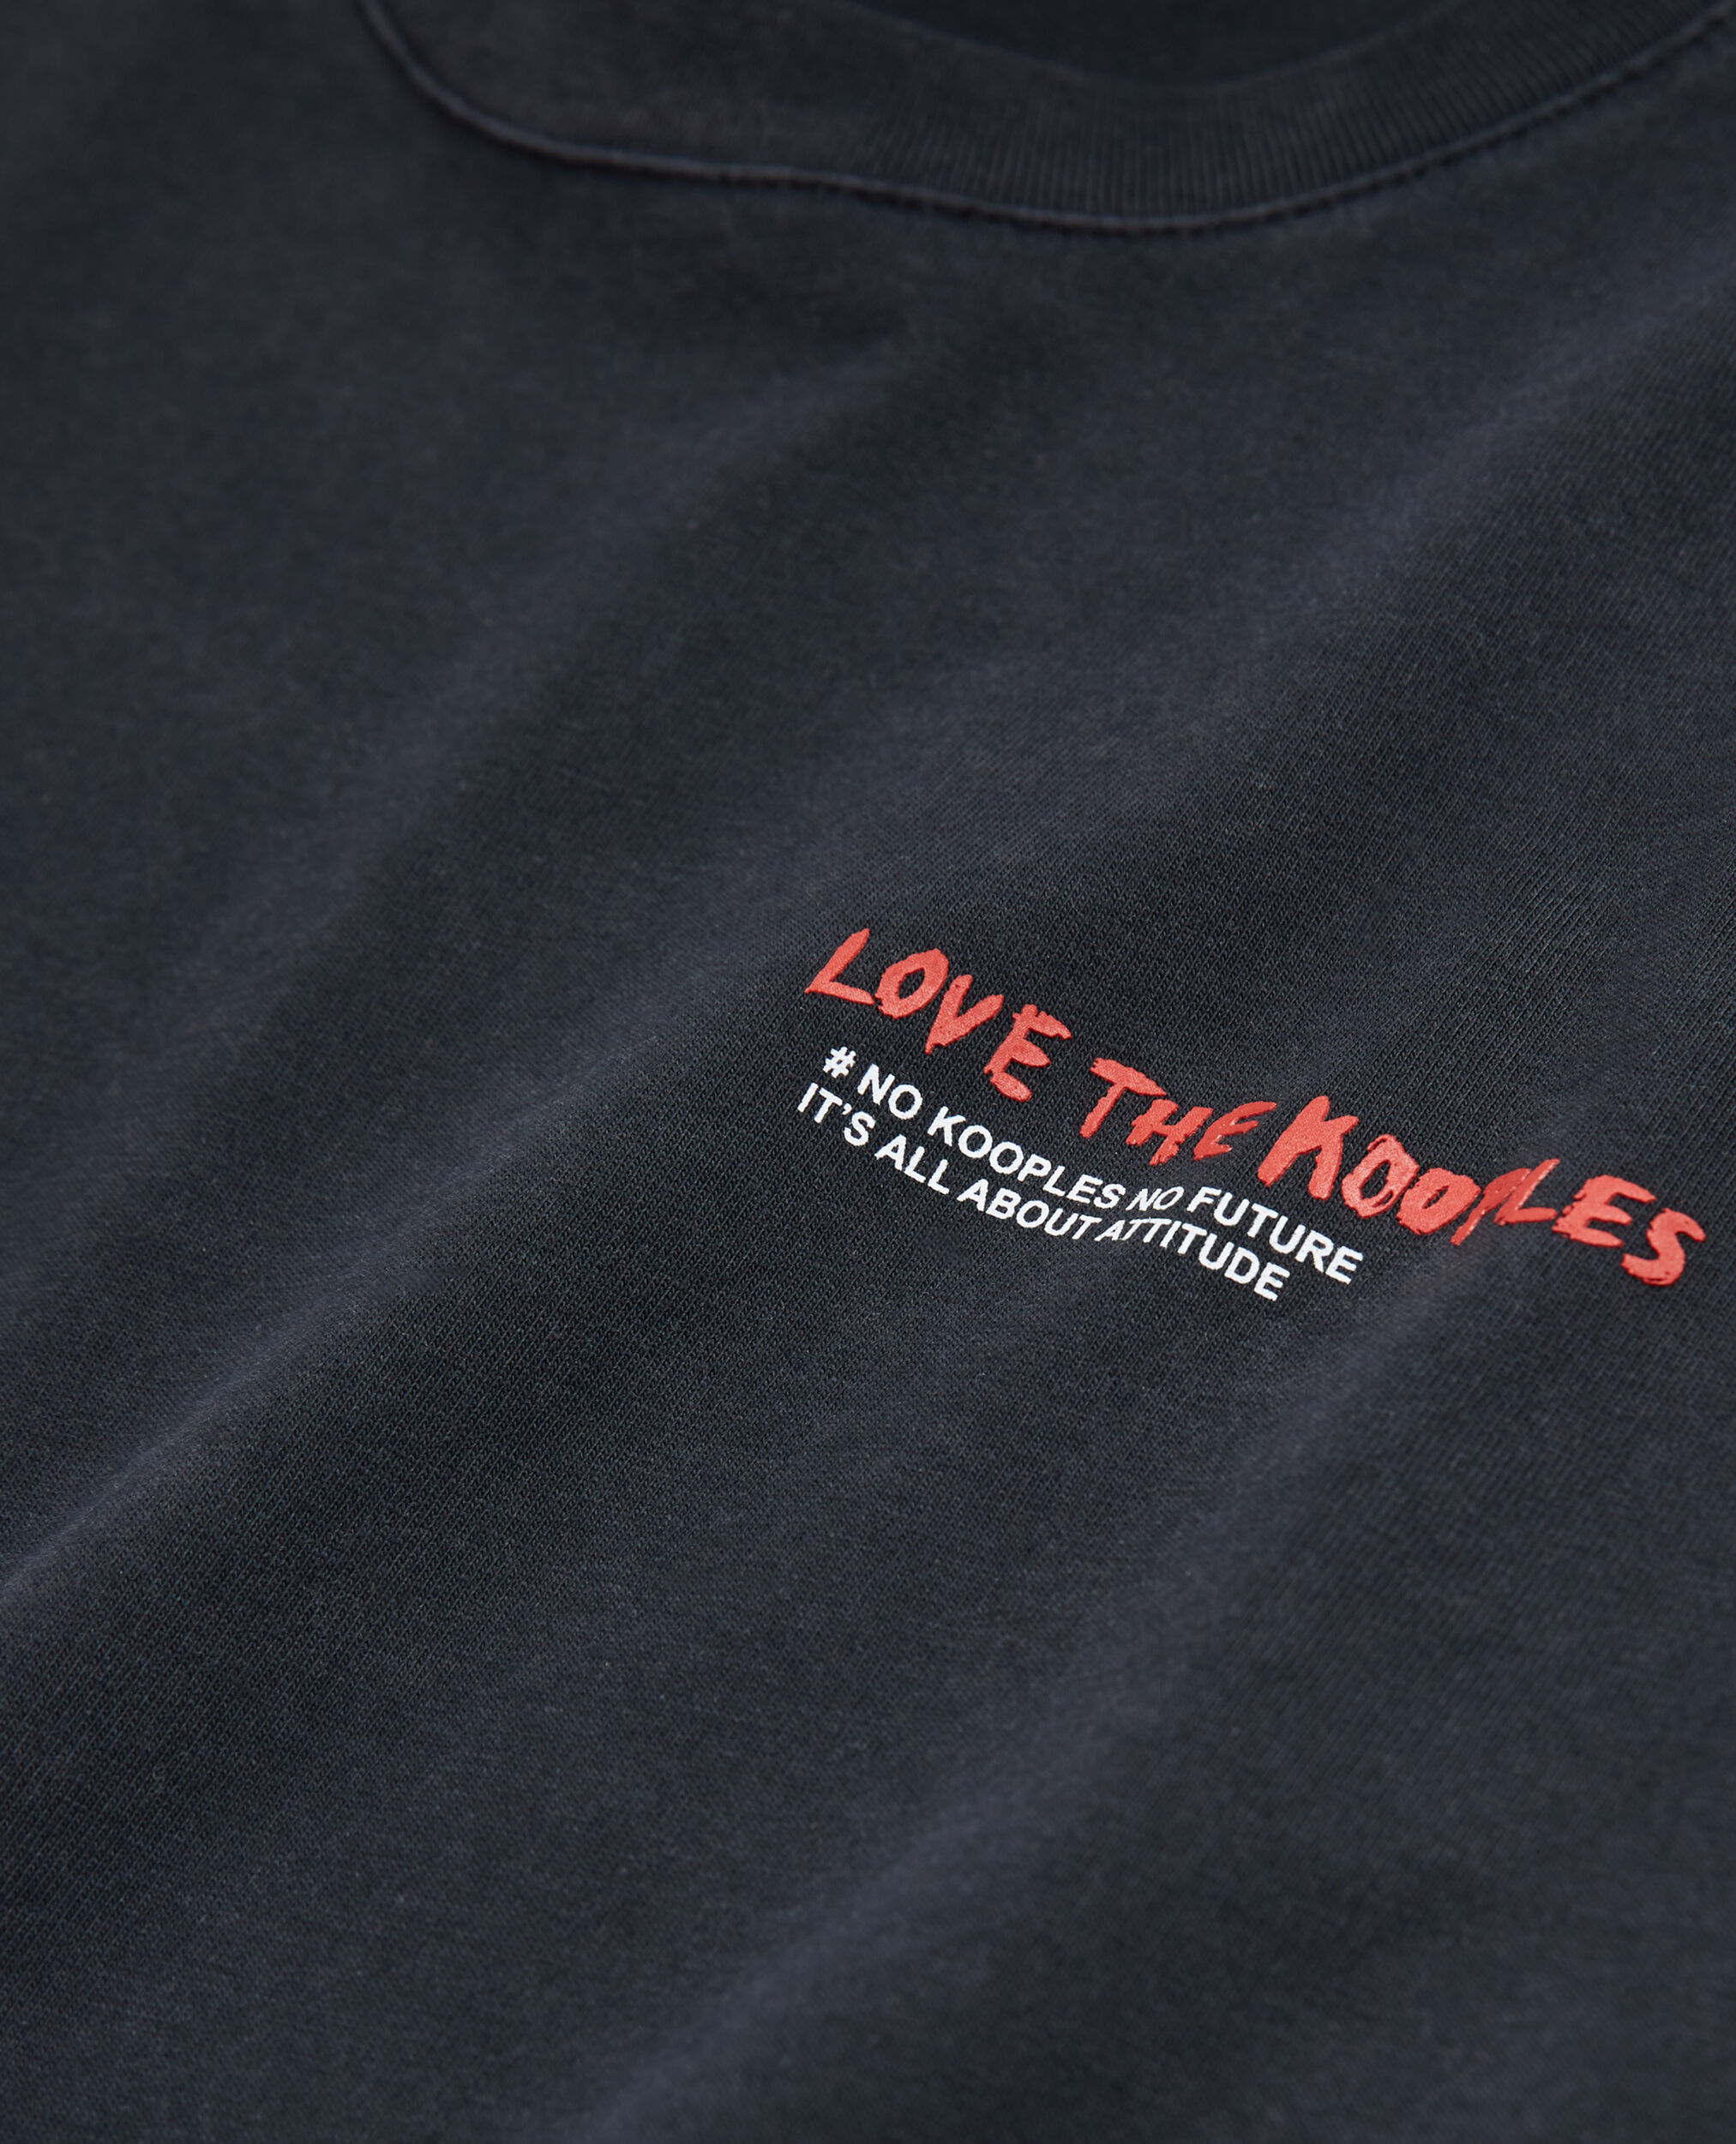 Black Love Kooples T-shirt, BLACK WASHED, hi-res image number null